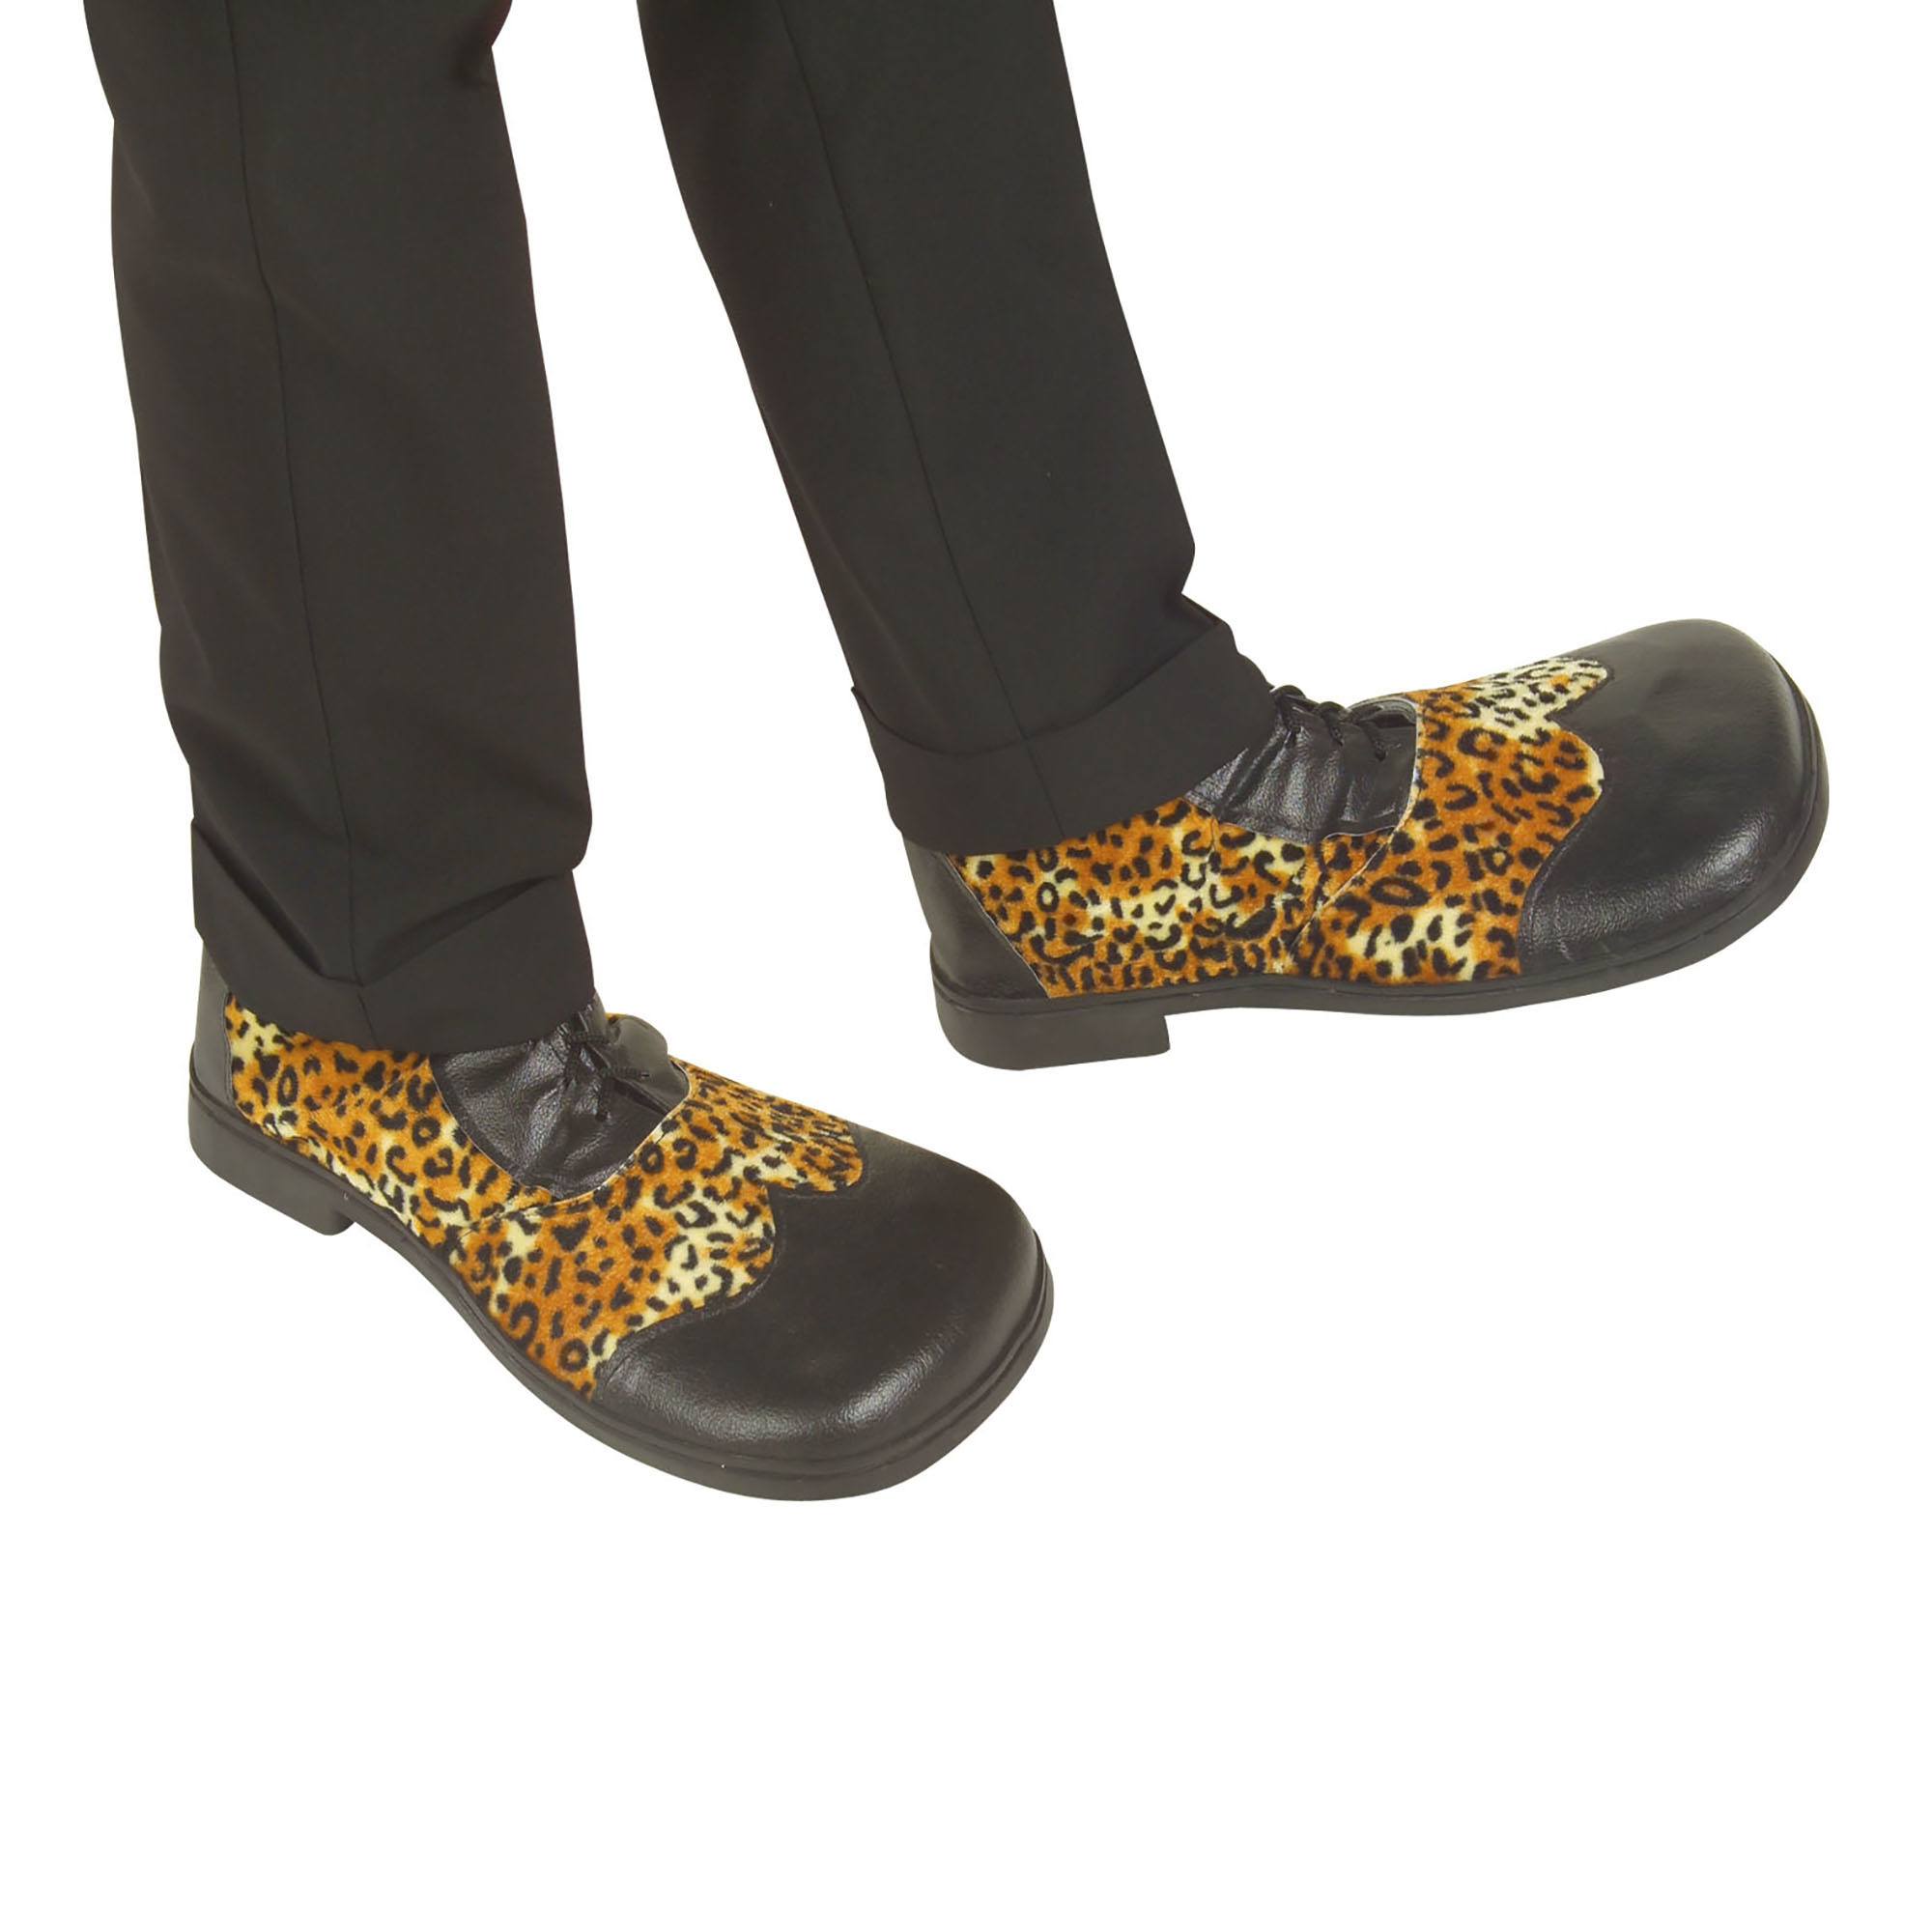 Party schoenen luipaard print met rubber zool